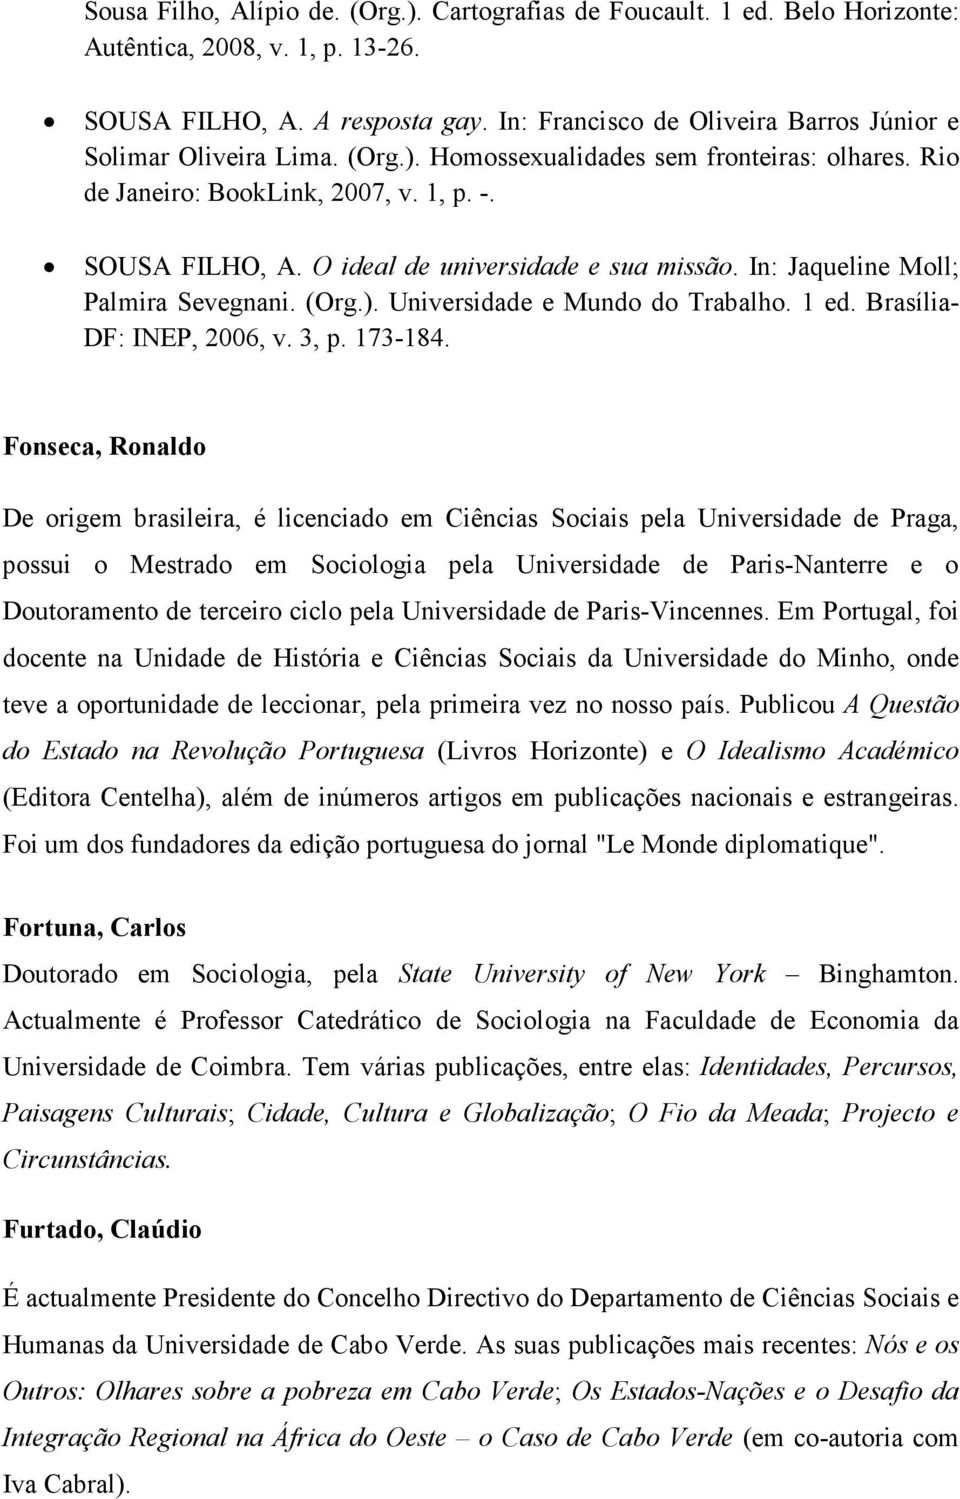 O ideal de universidade e sua missão. In: Jaqueline Moll; Palmira Sevegnani. (Org.). Universidade e Mundo do Trabalho. 1 ed. Brasília- DF: INEP, 2006, v. 3, p. 173-184.